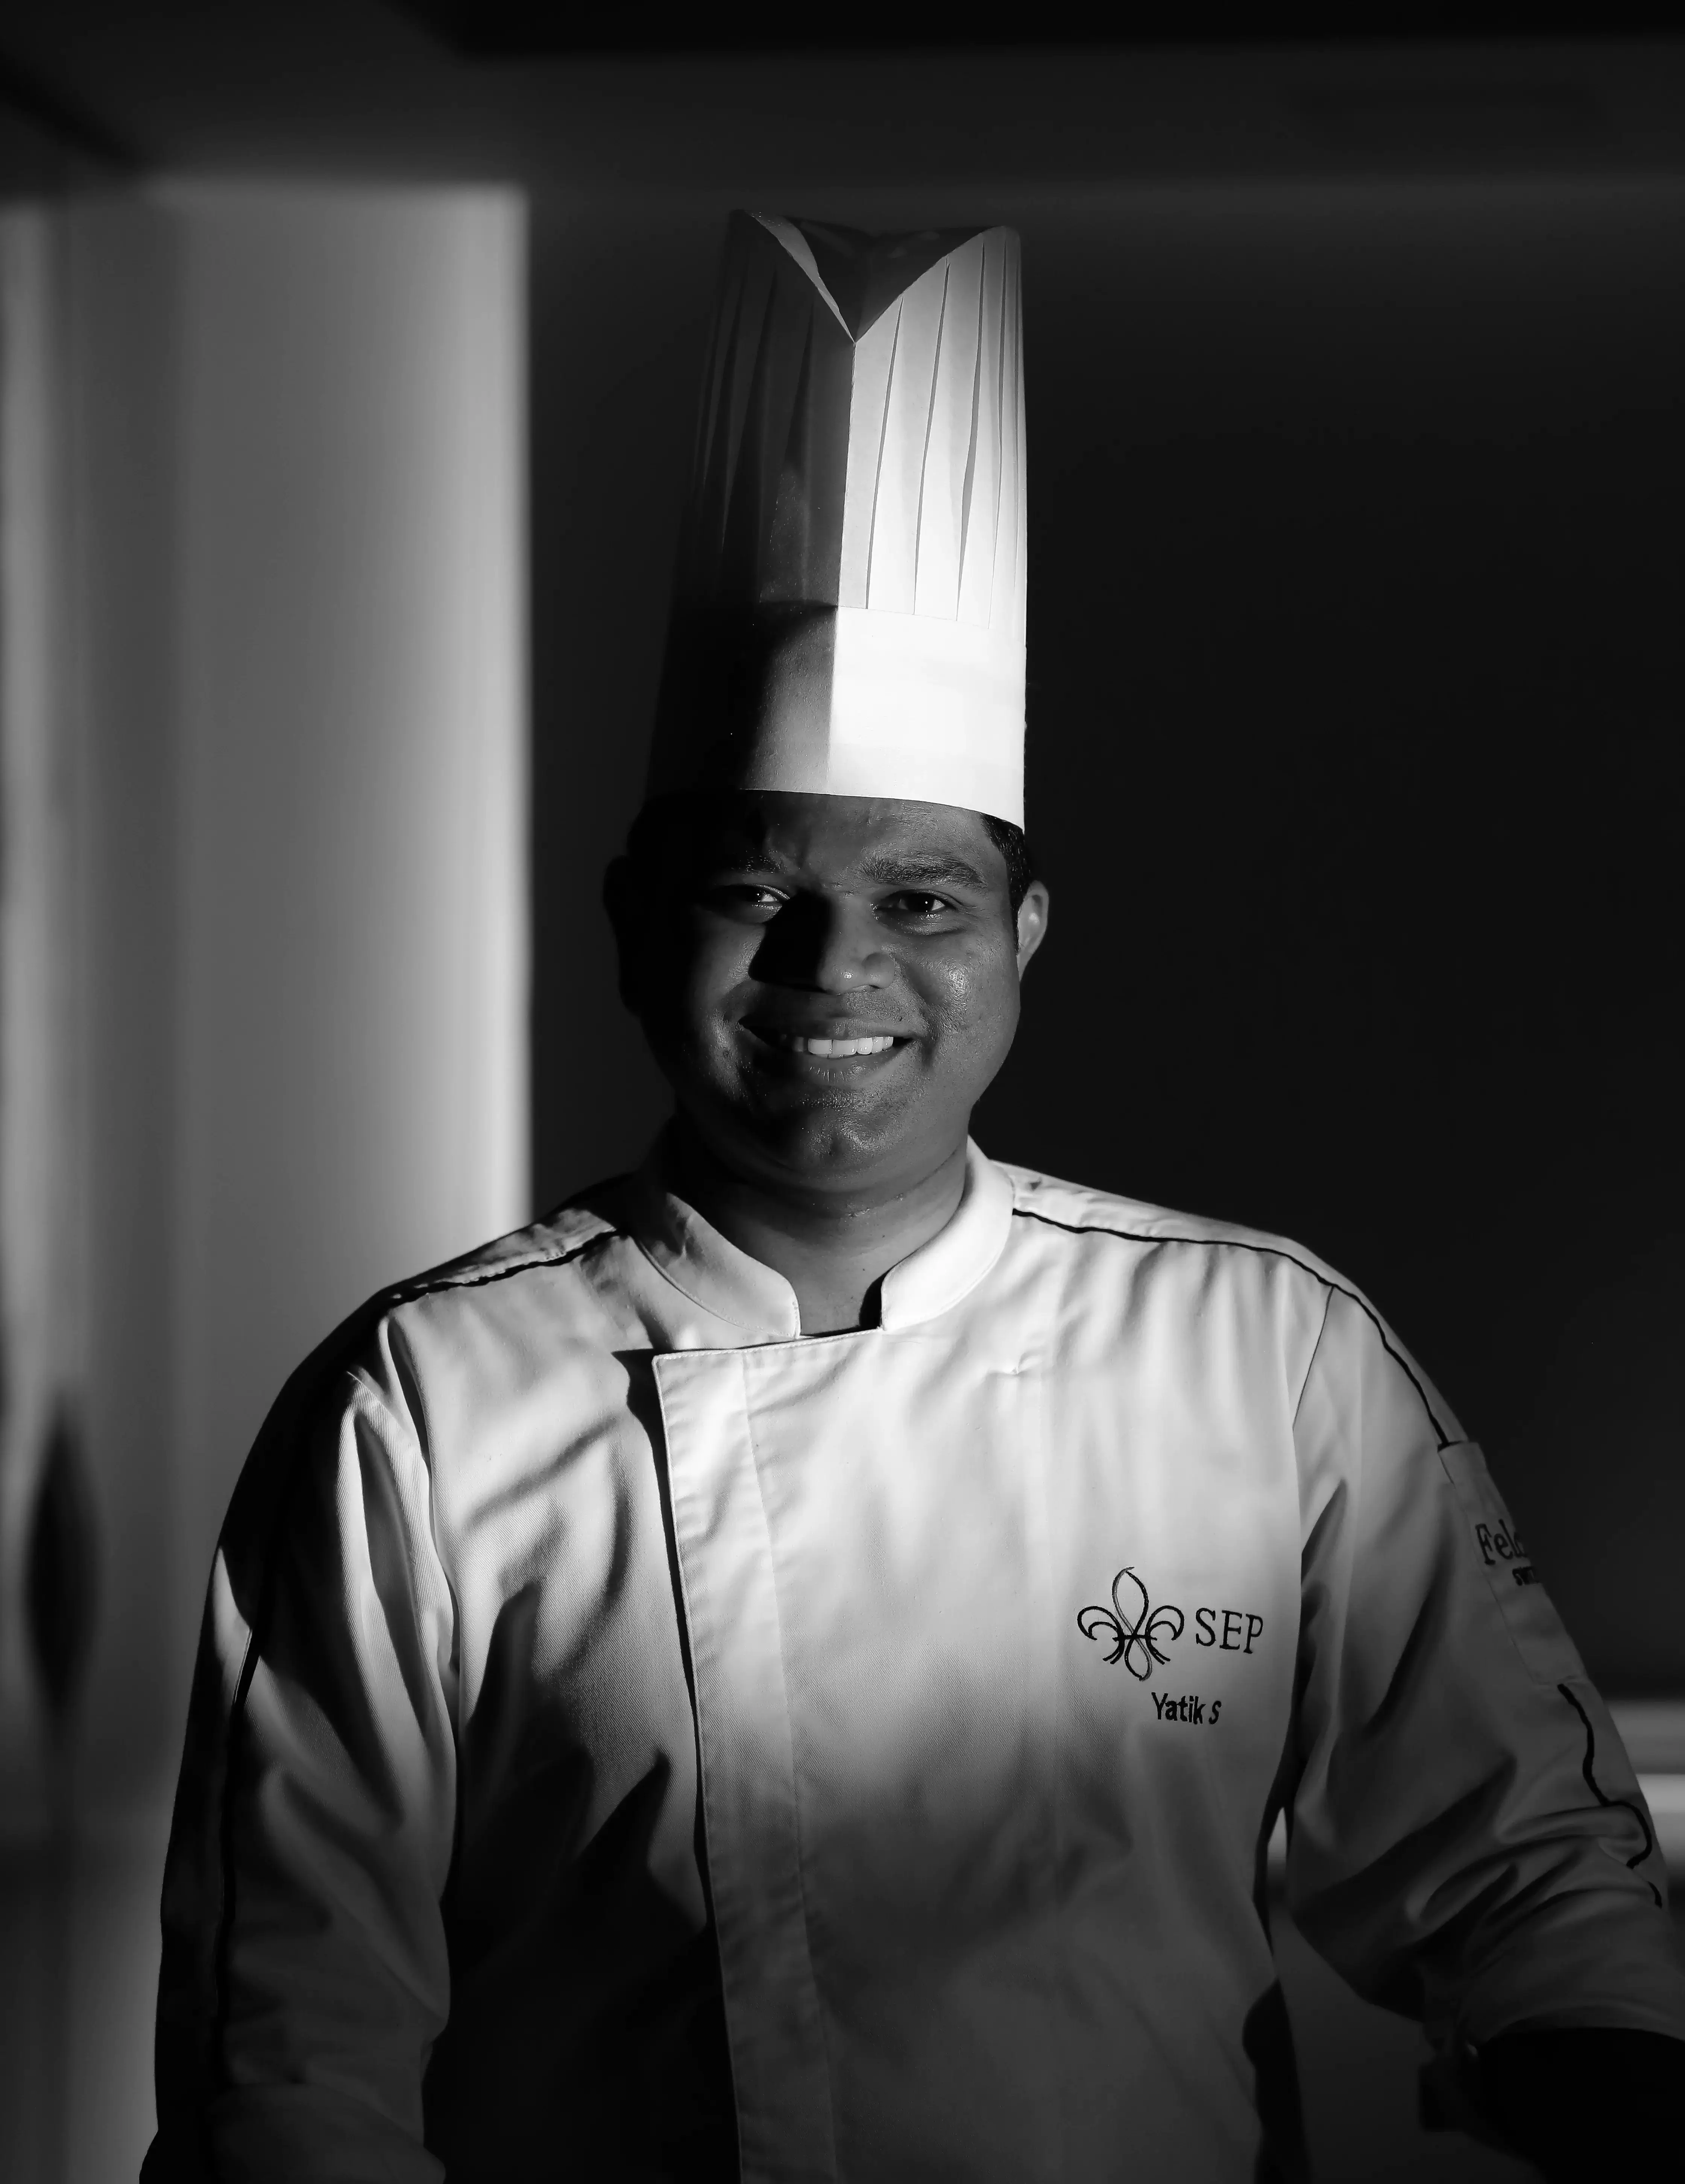 Chef Yatik Shirdhankar